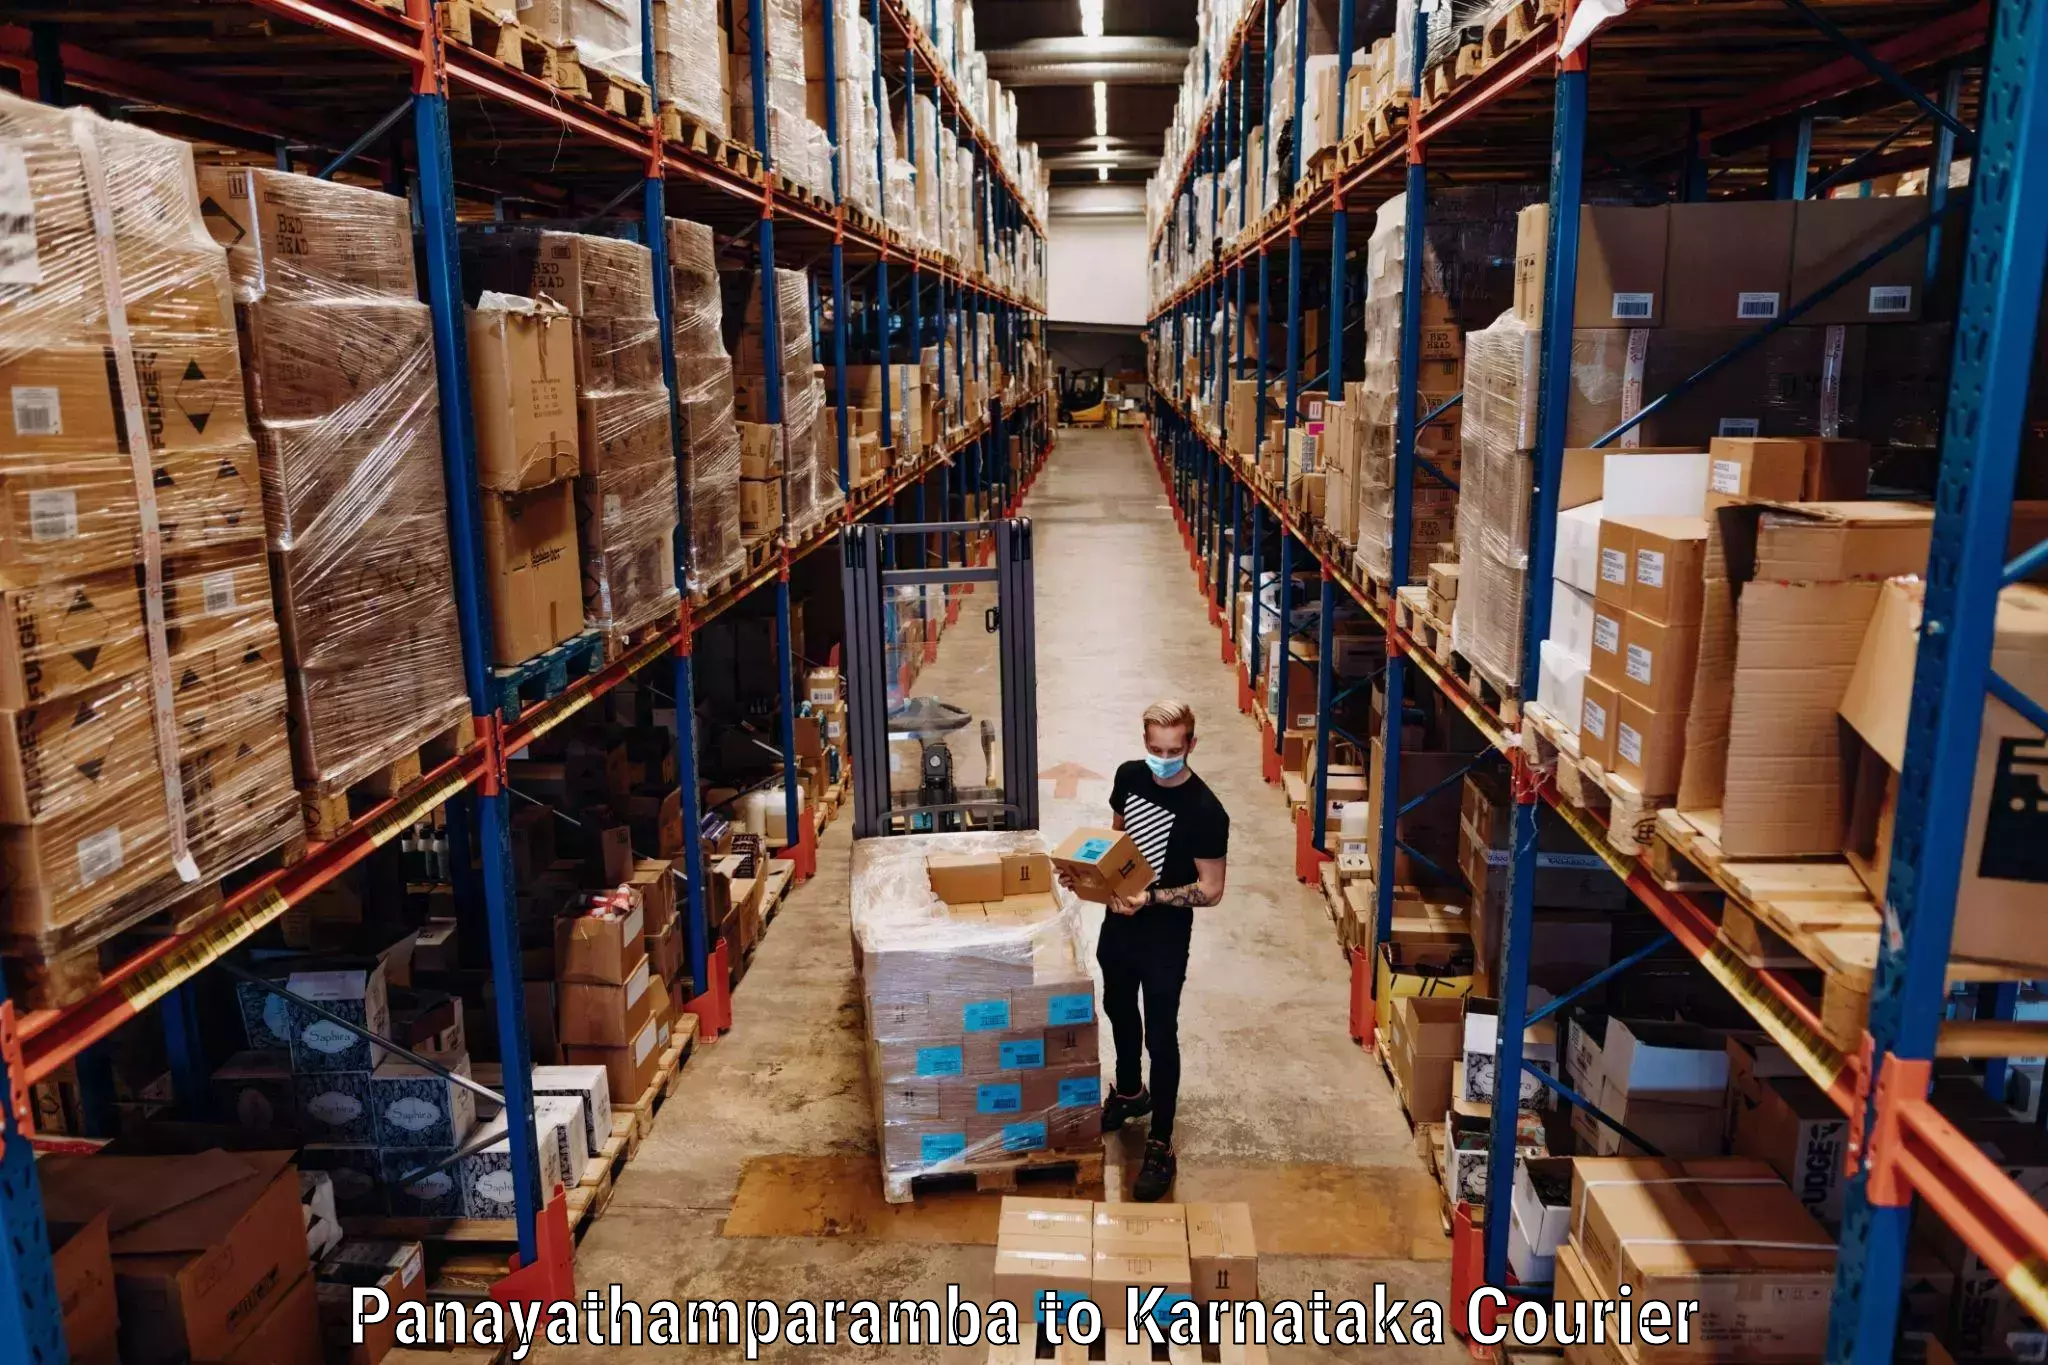 Luggage shipment specialists Panayathamparamba to Bhatkal